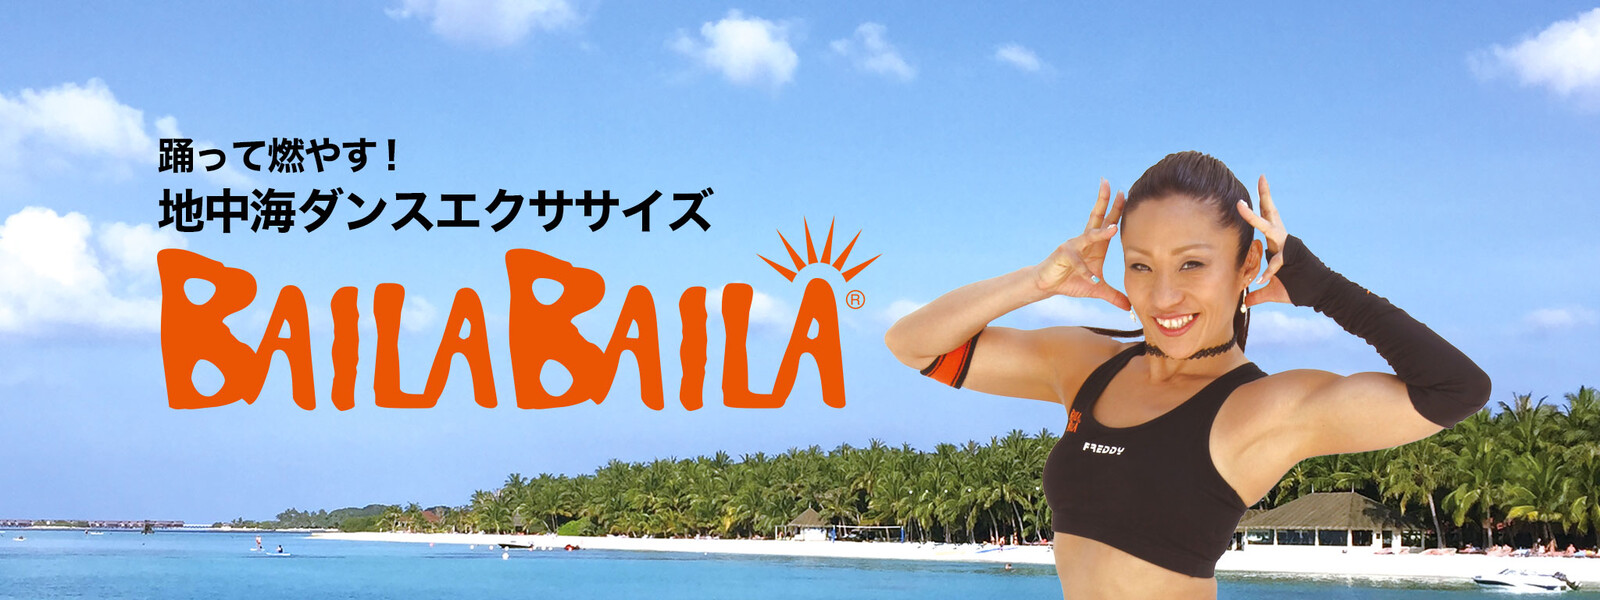 踊って燃やす! 地中海ダンスエクササイズ BAILABAILAの動画 - 美しい“クビレ”を手にいれる! Belly Dance Fitness